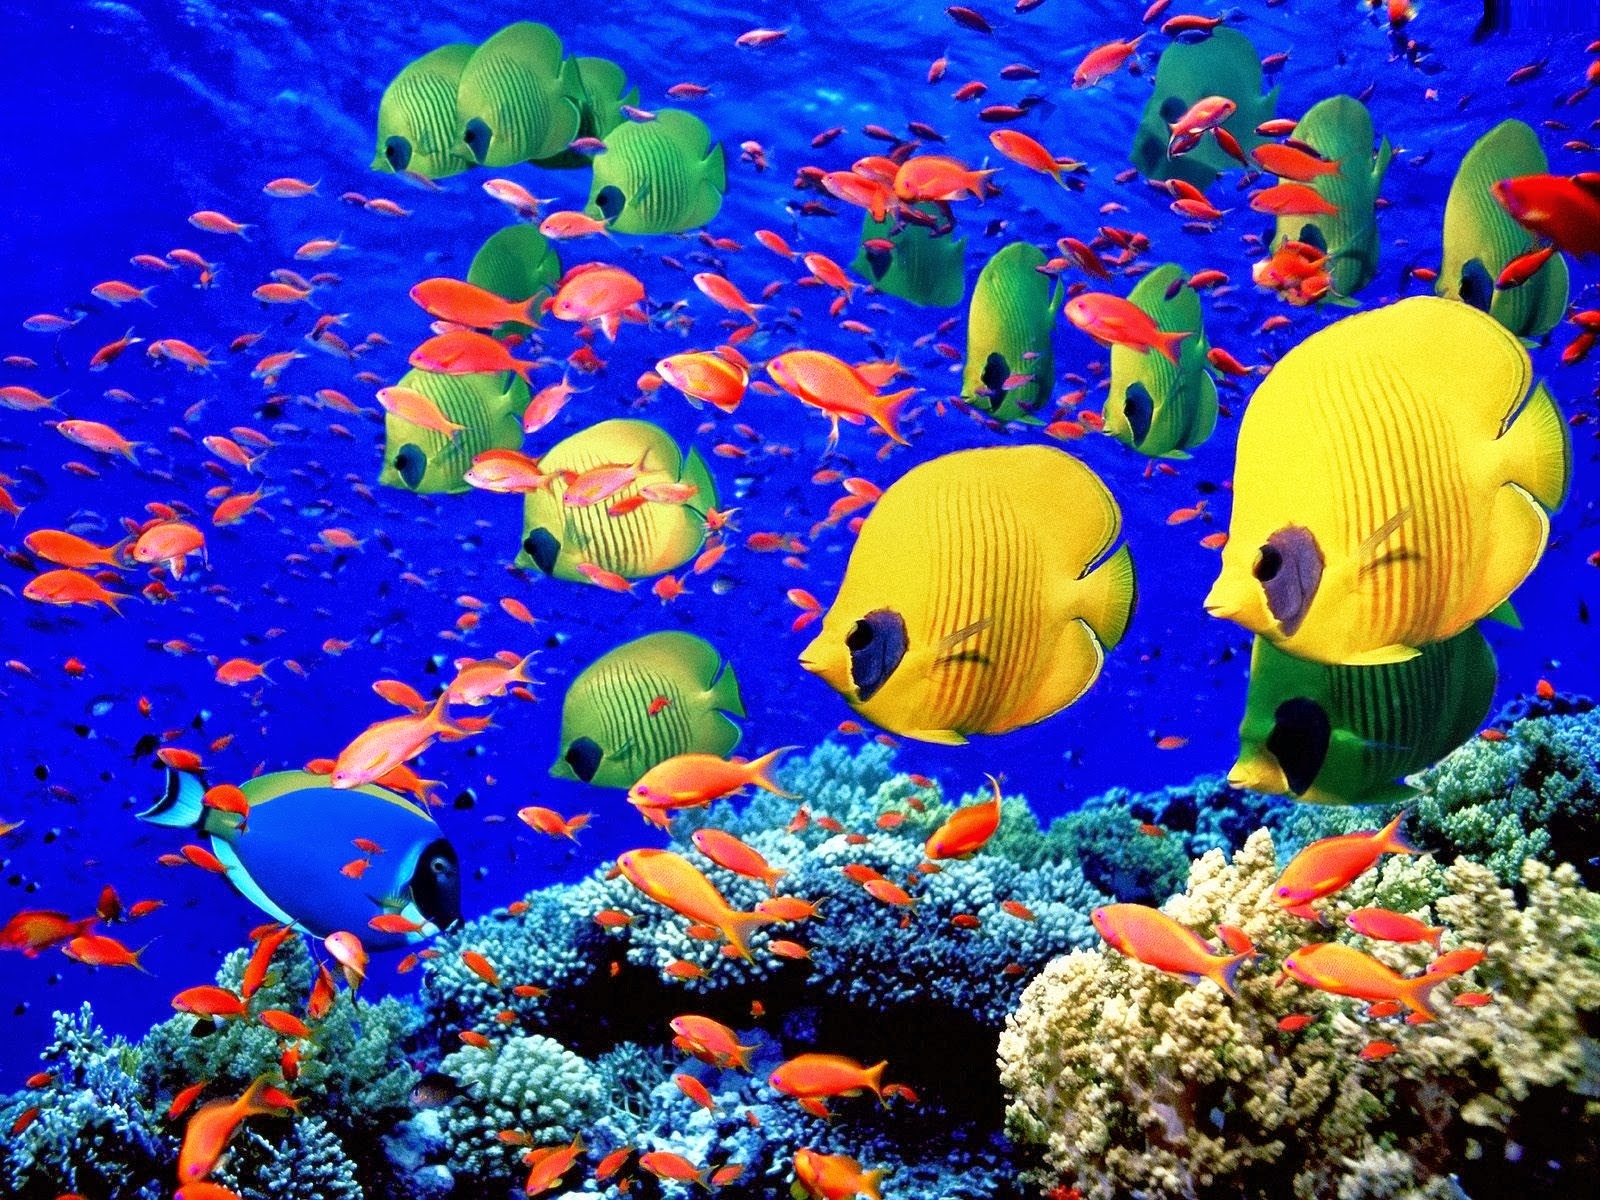 움직이는 물고기 벽지,산호초,산호초 물고기,물고기,물고기,수중